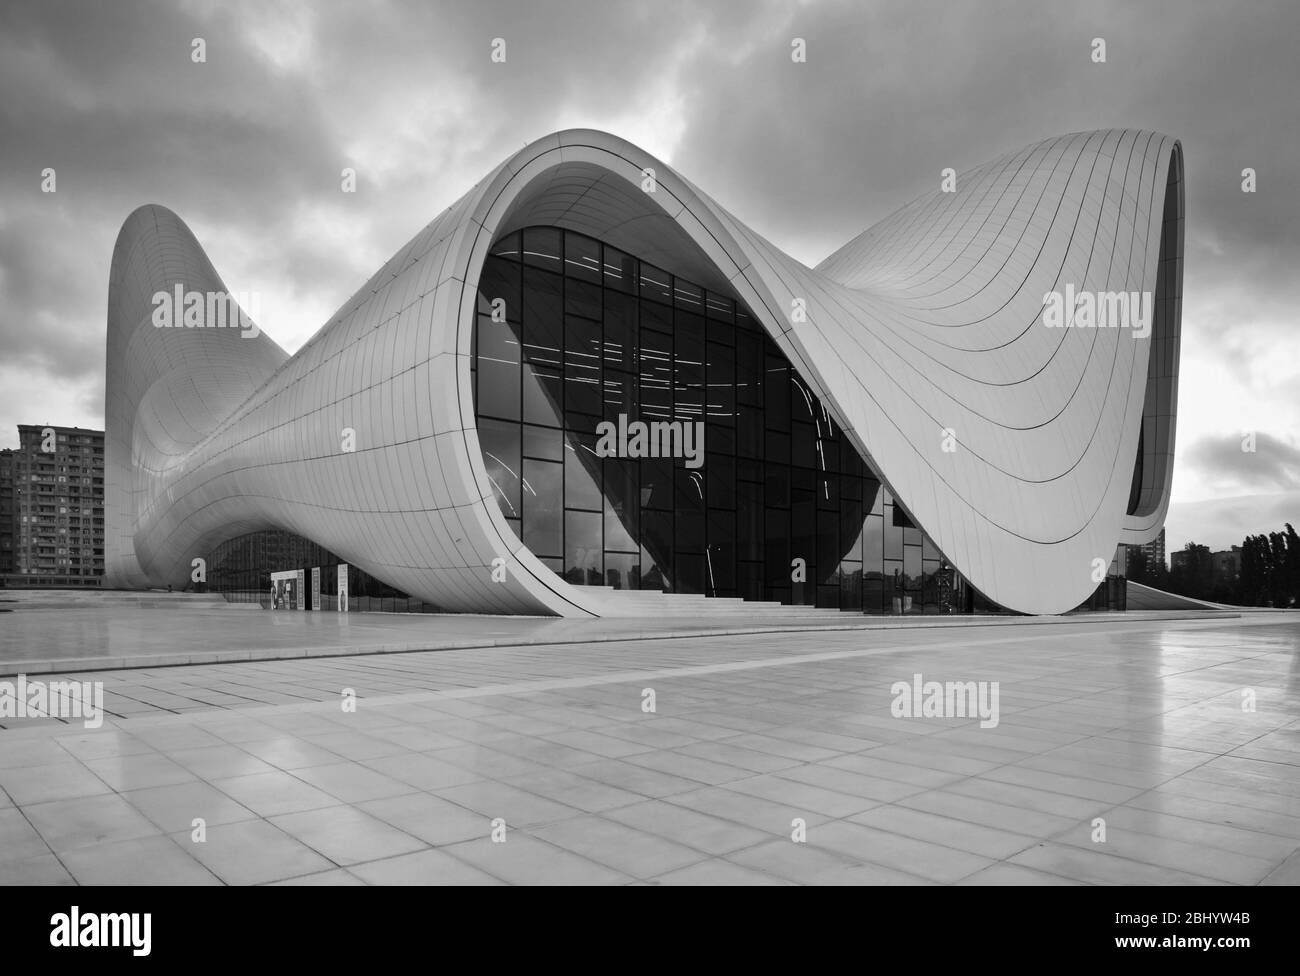 Heydar Aliyev Center in Baku. Azerbaijan Stock Photo